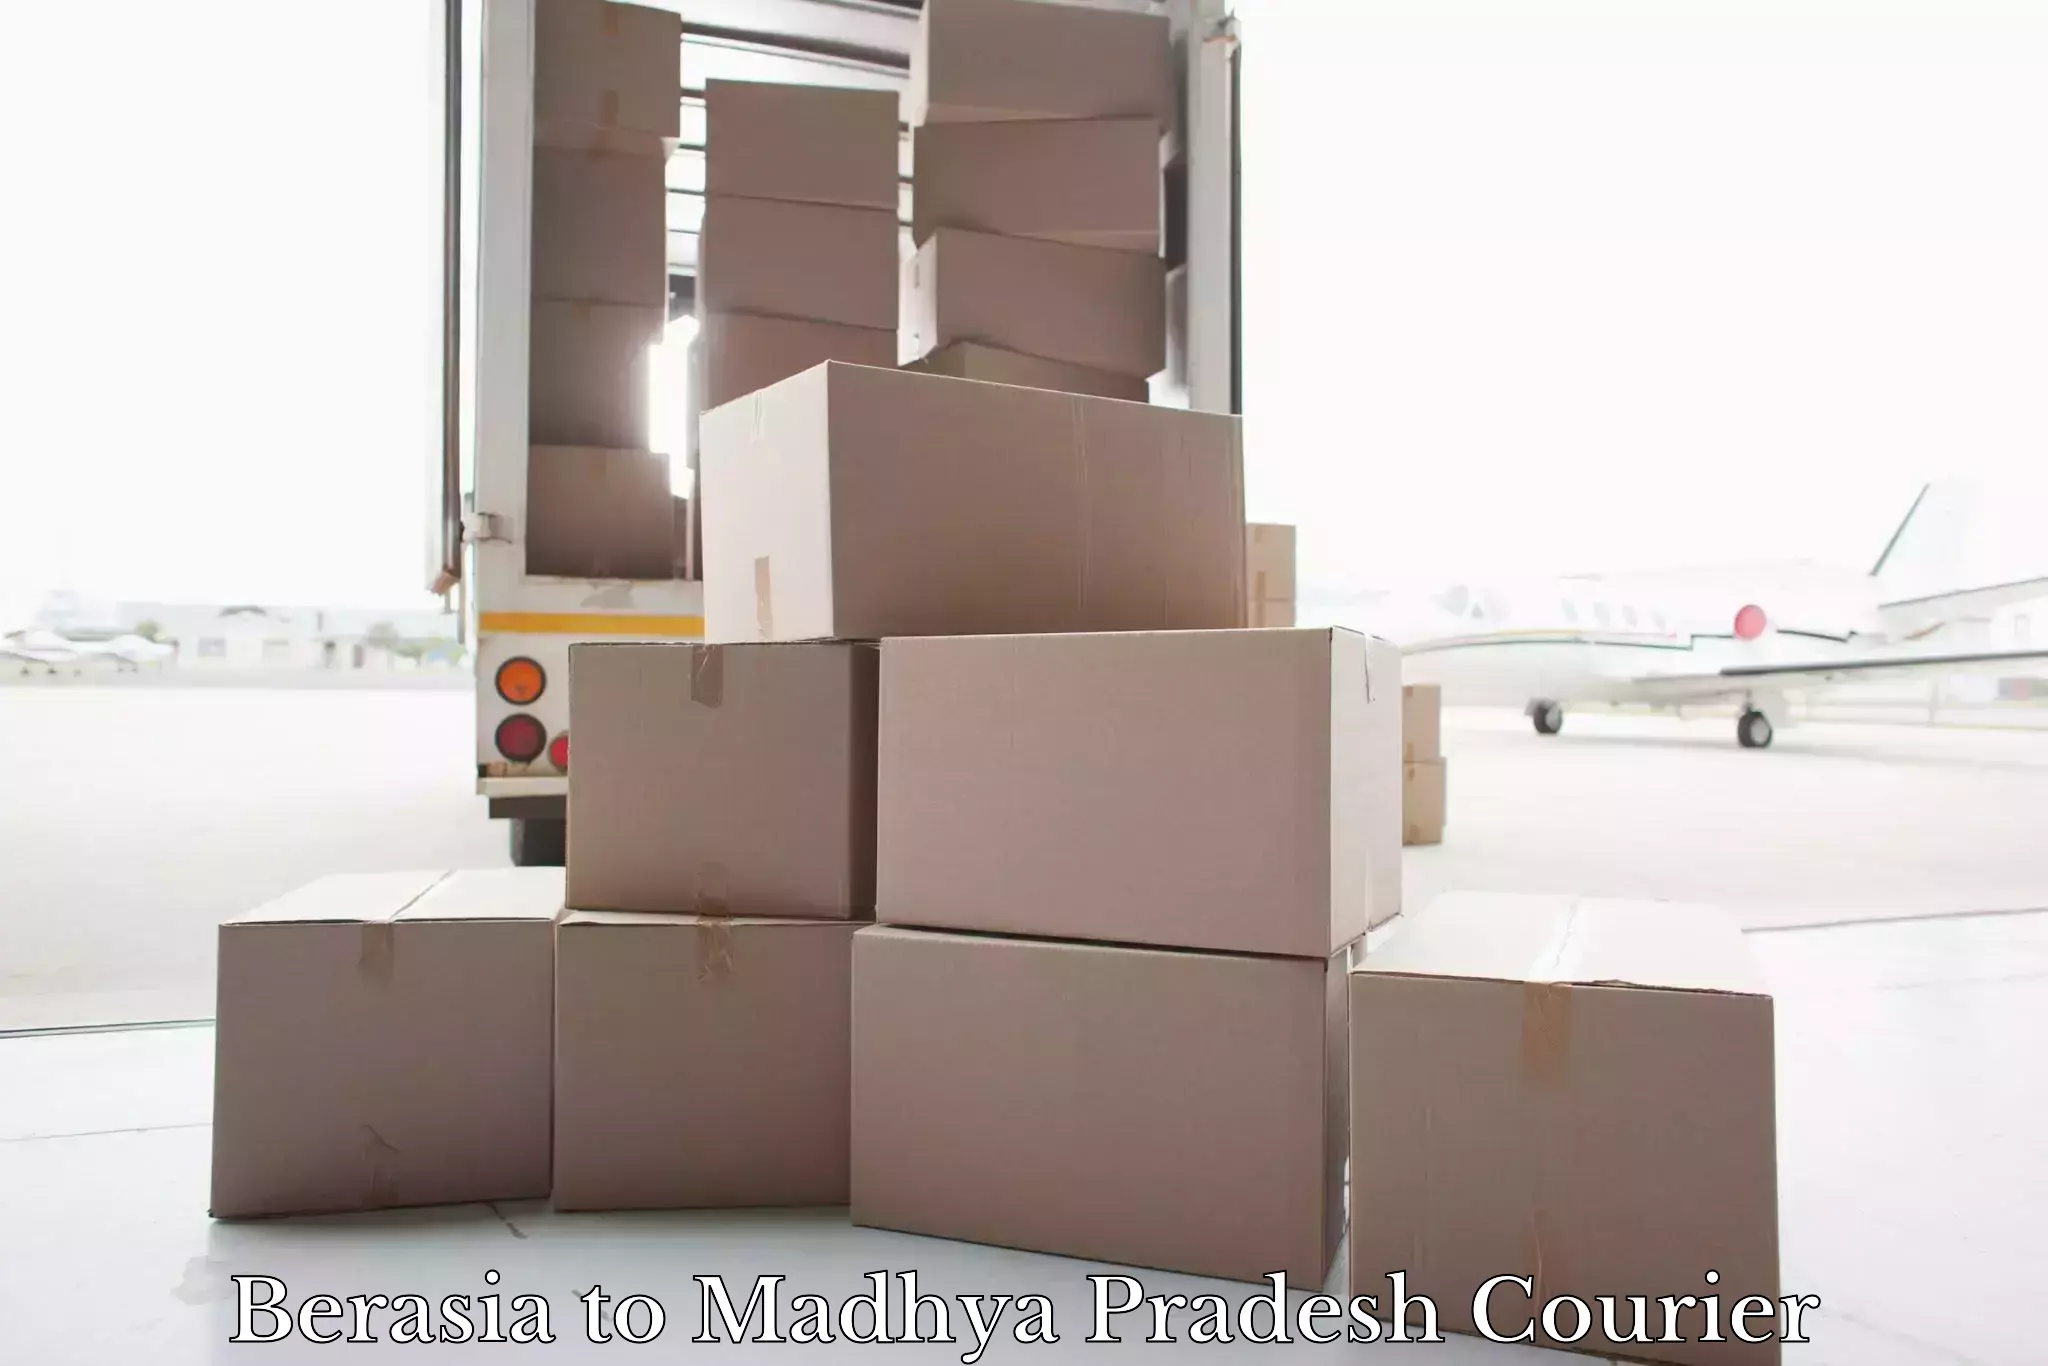 Quick luggage shipment in Berasia to Madhya Pradesh